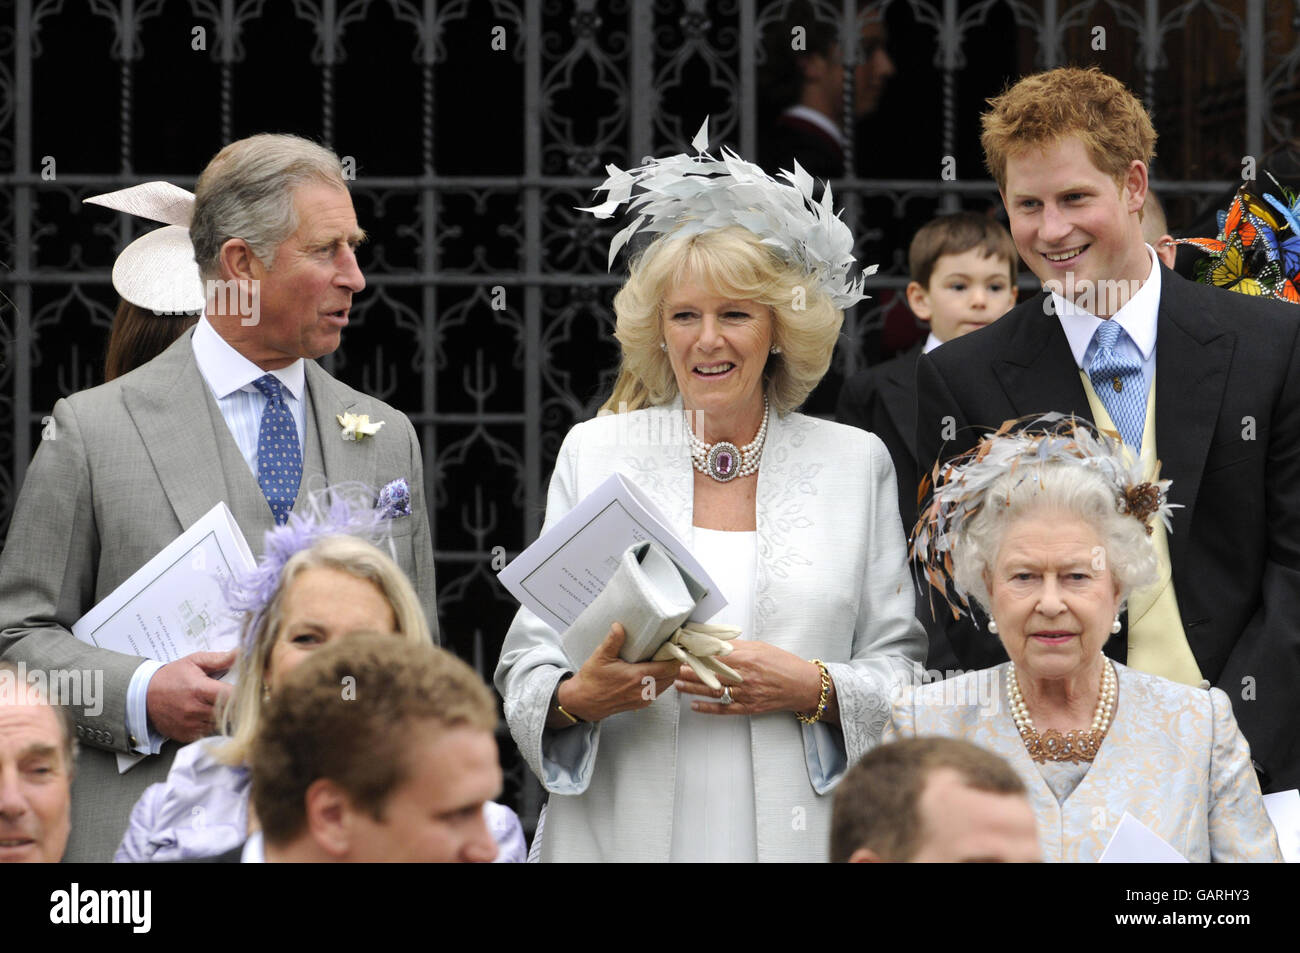 La reine Elizabeth II et le prince de Galles, la duchesse de Cornwall et le prince Harry devant la chapelle Saint-Georges à Windsor, en Angleterre, après la cérémonie de mariage de Peter Phillips et Autumn Kelly. Banque D'Images